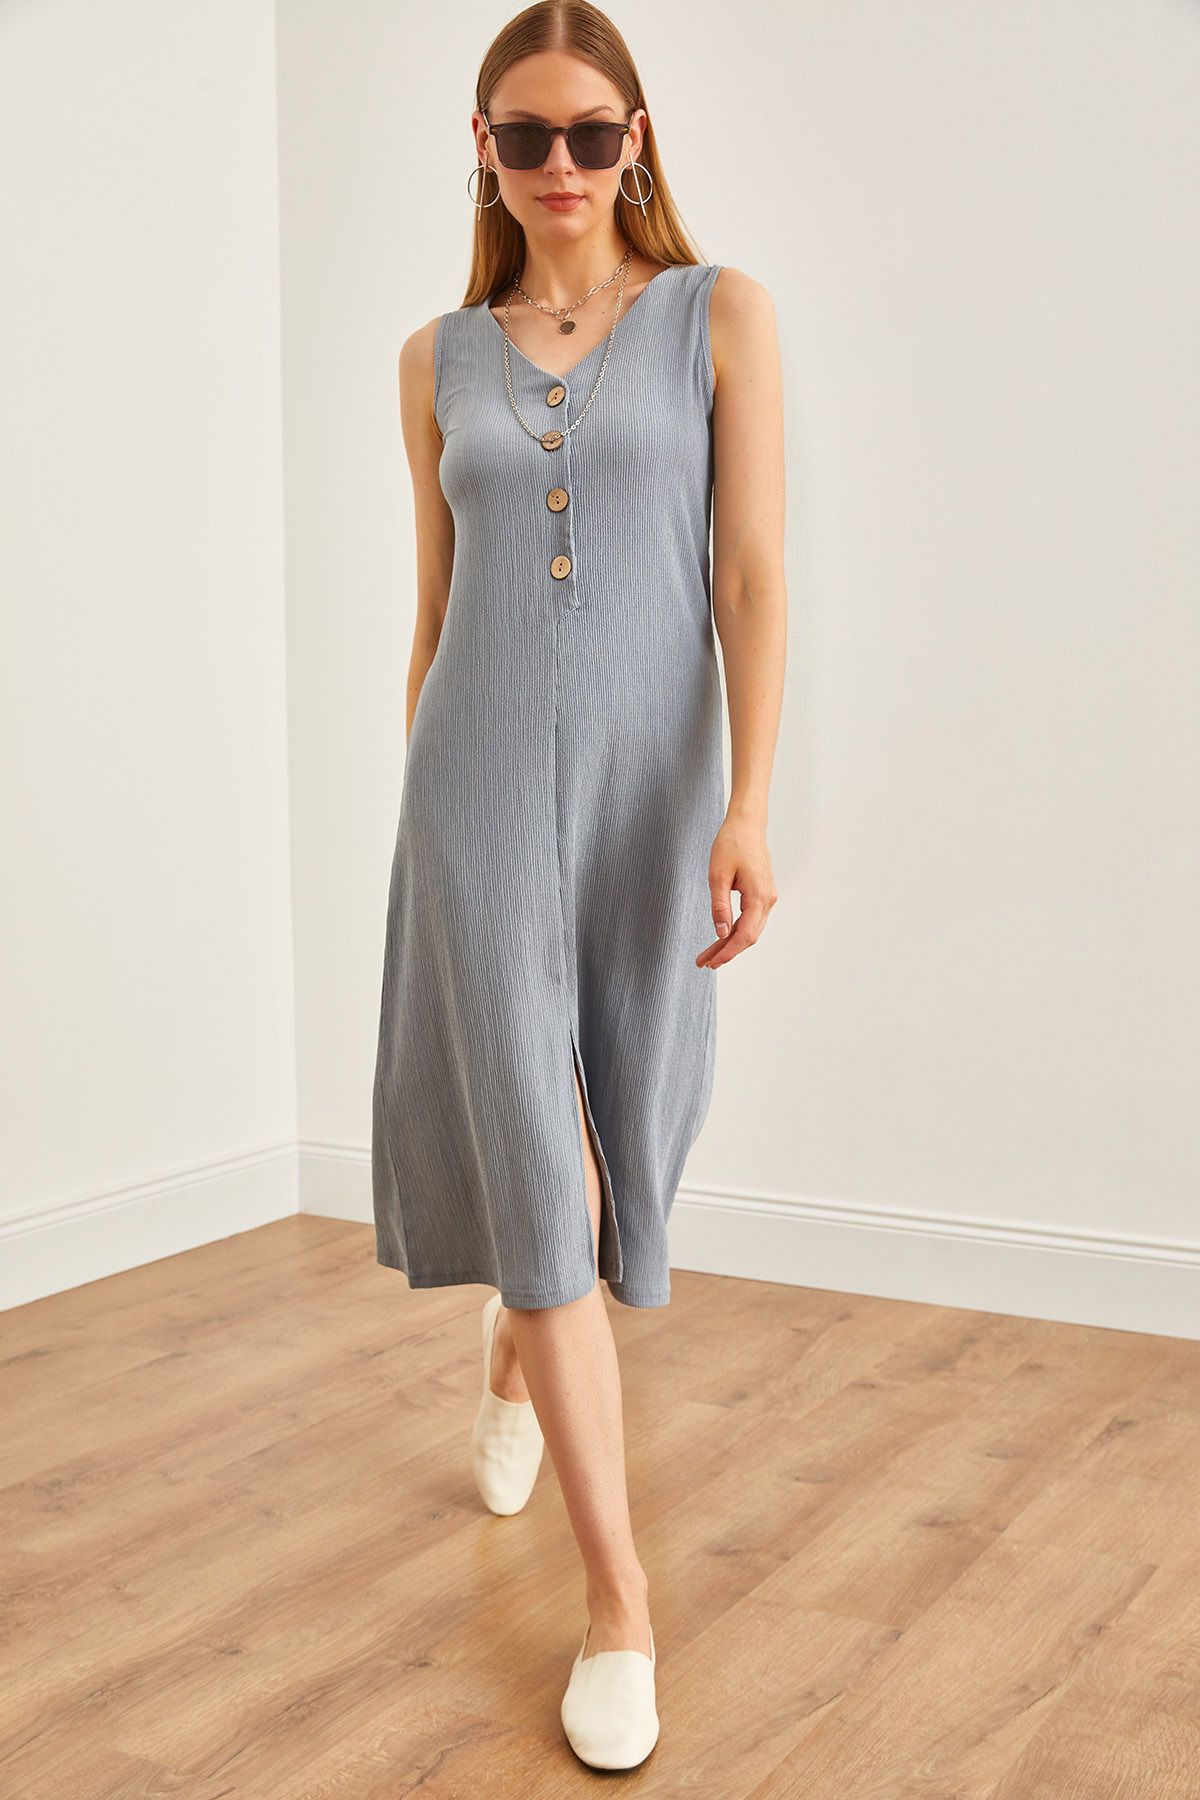 Olalook Kadın Gri Ahşap Düğmeli Yırtmaçlı Elbise ELB-19002165